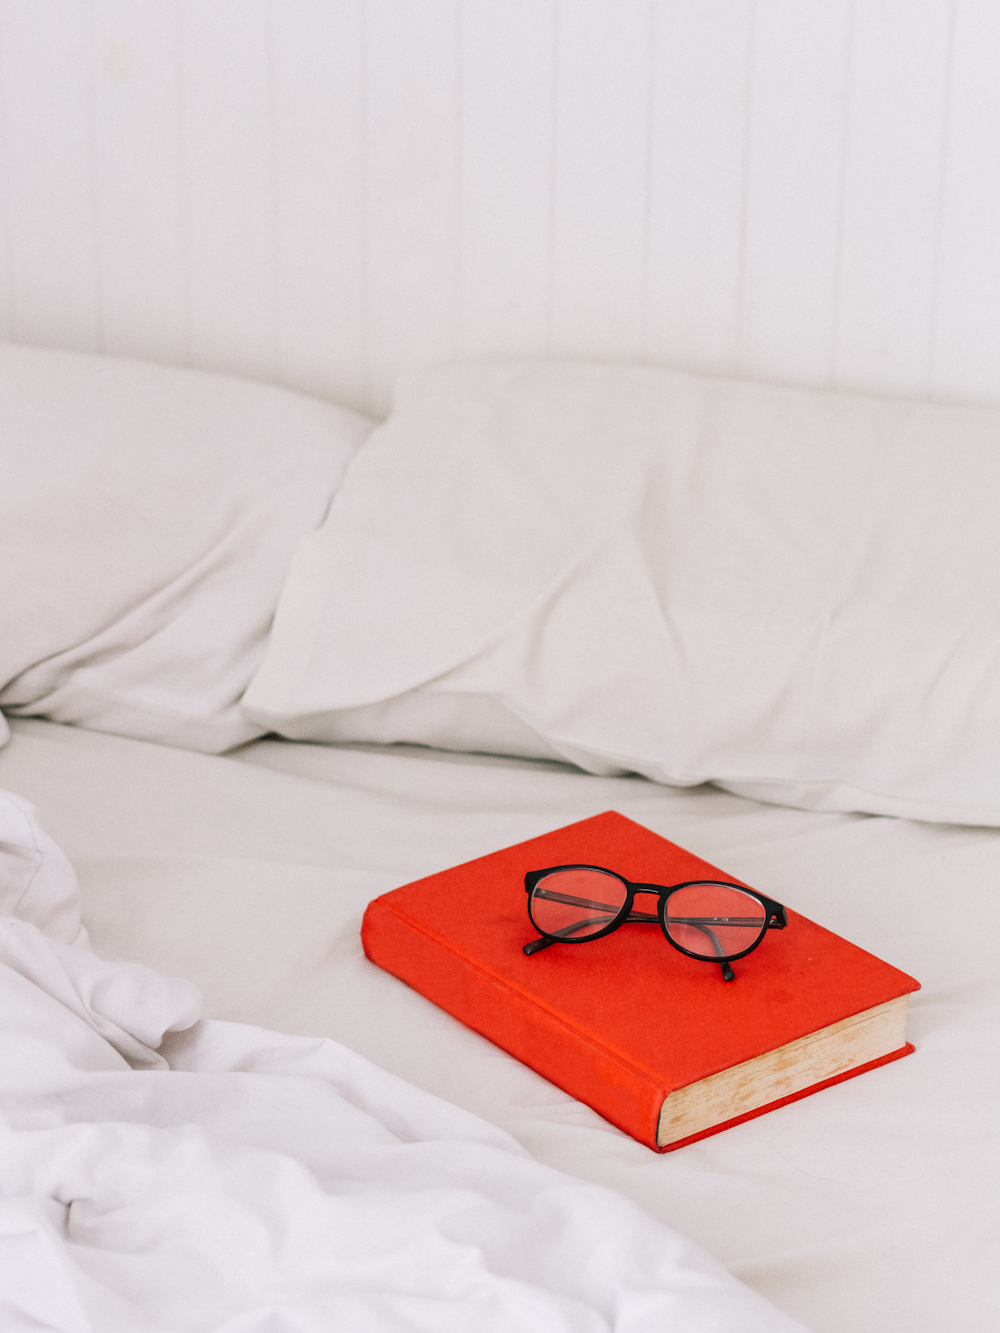 Brillen mit schwarzem Rahmen auf orangefarbenem Buch